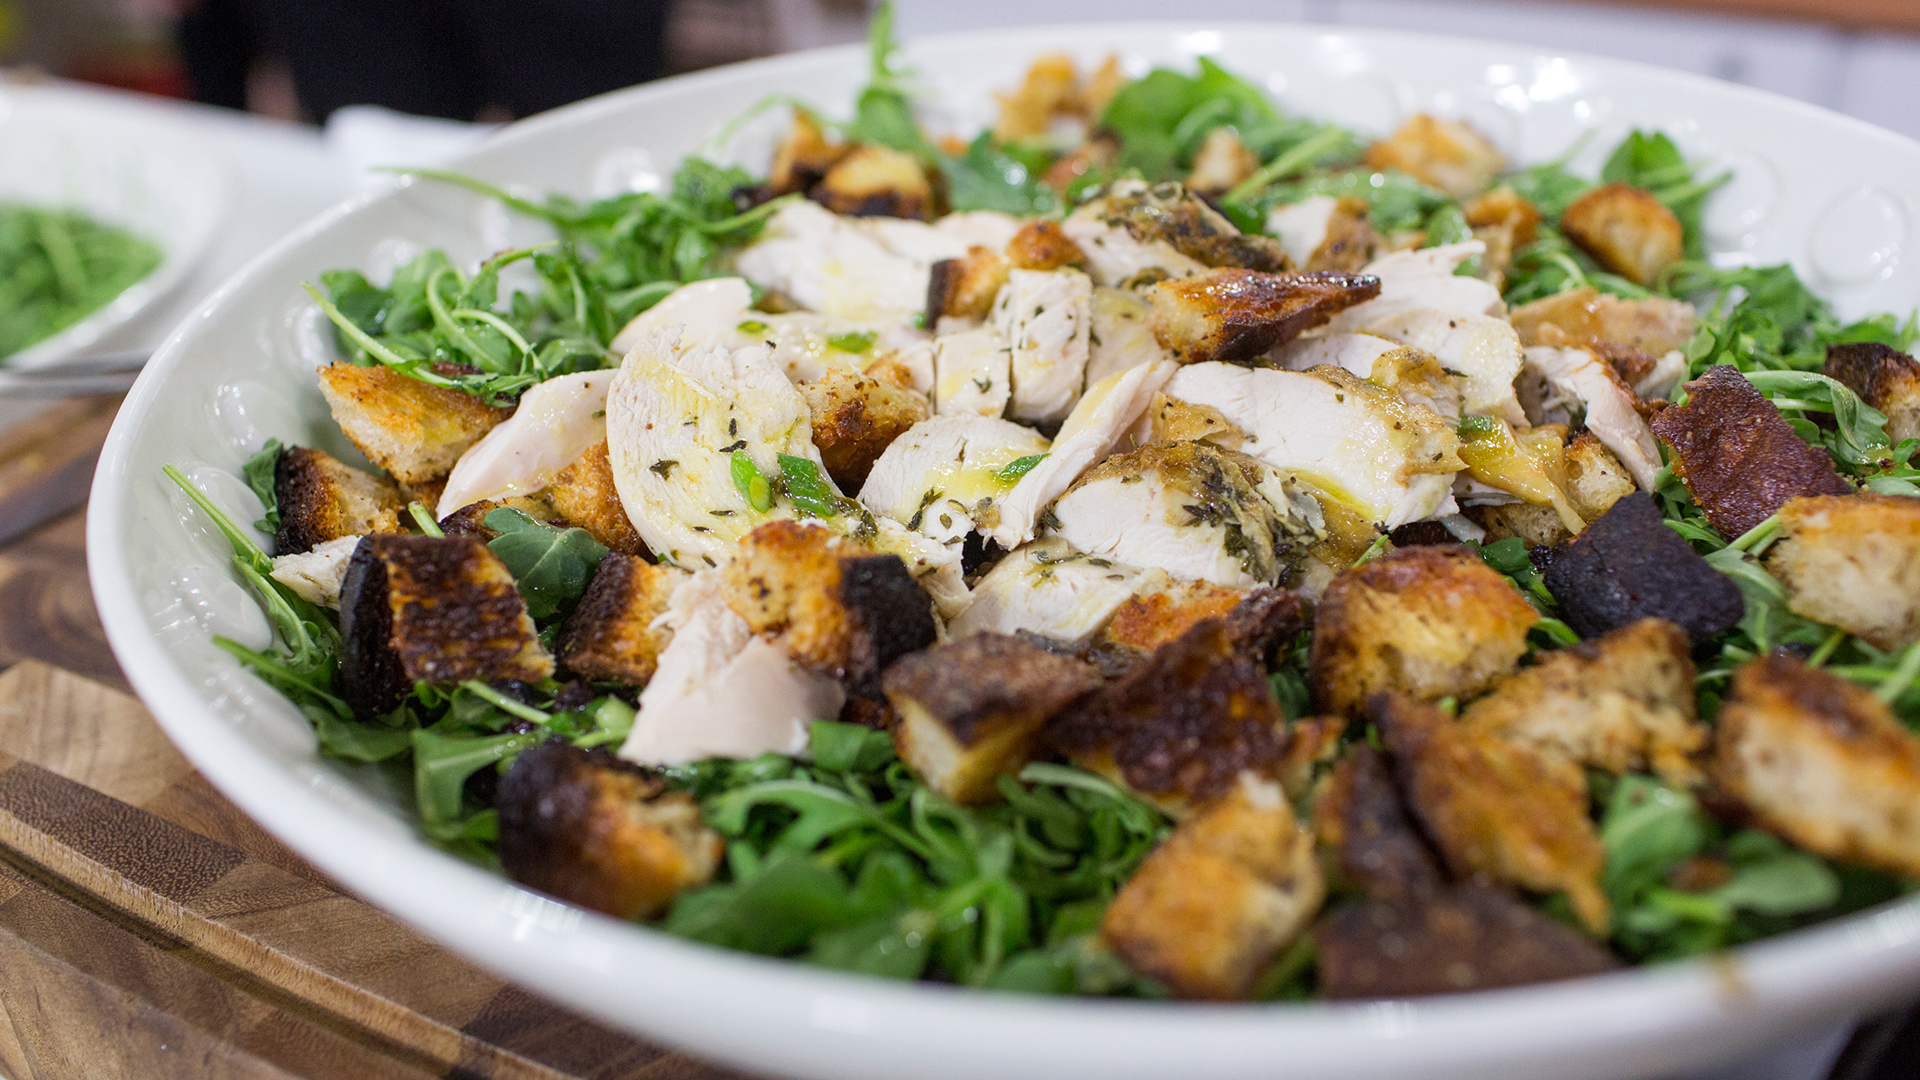 Garten Rost Einzigartig Roast Chicken Over Bread and Arugula Salad